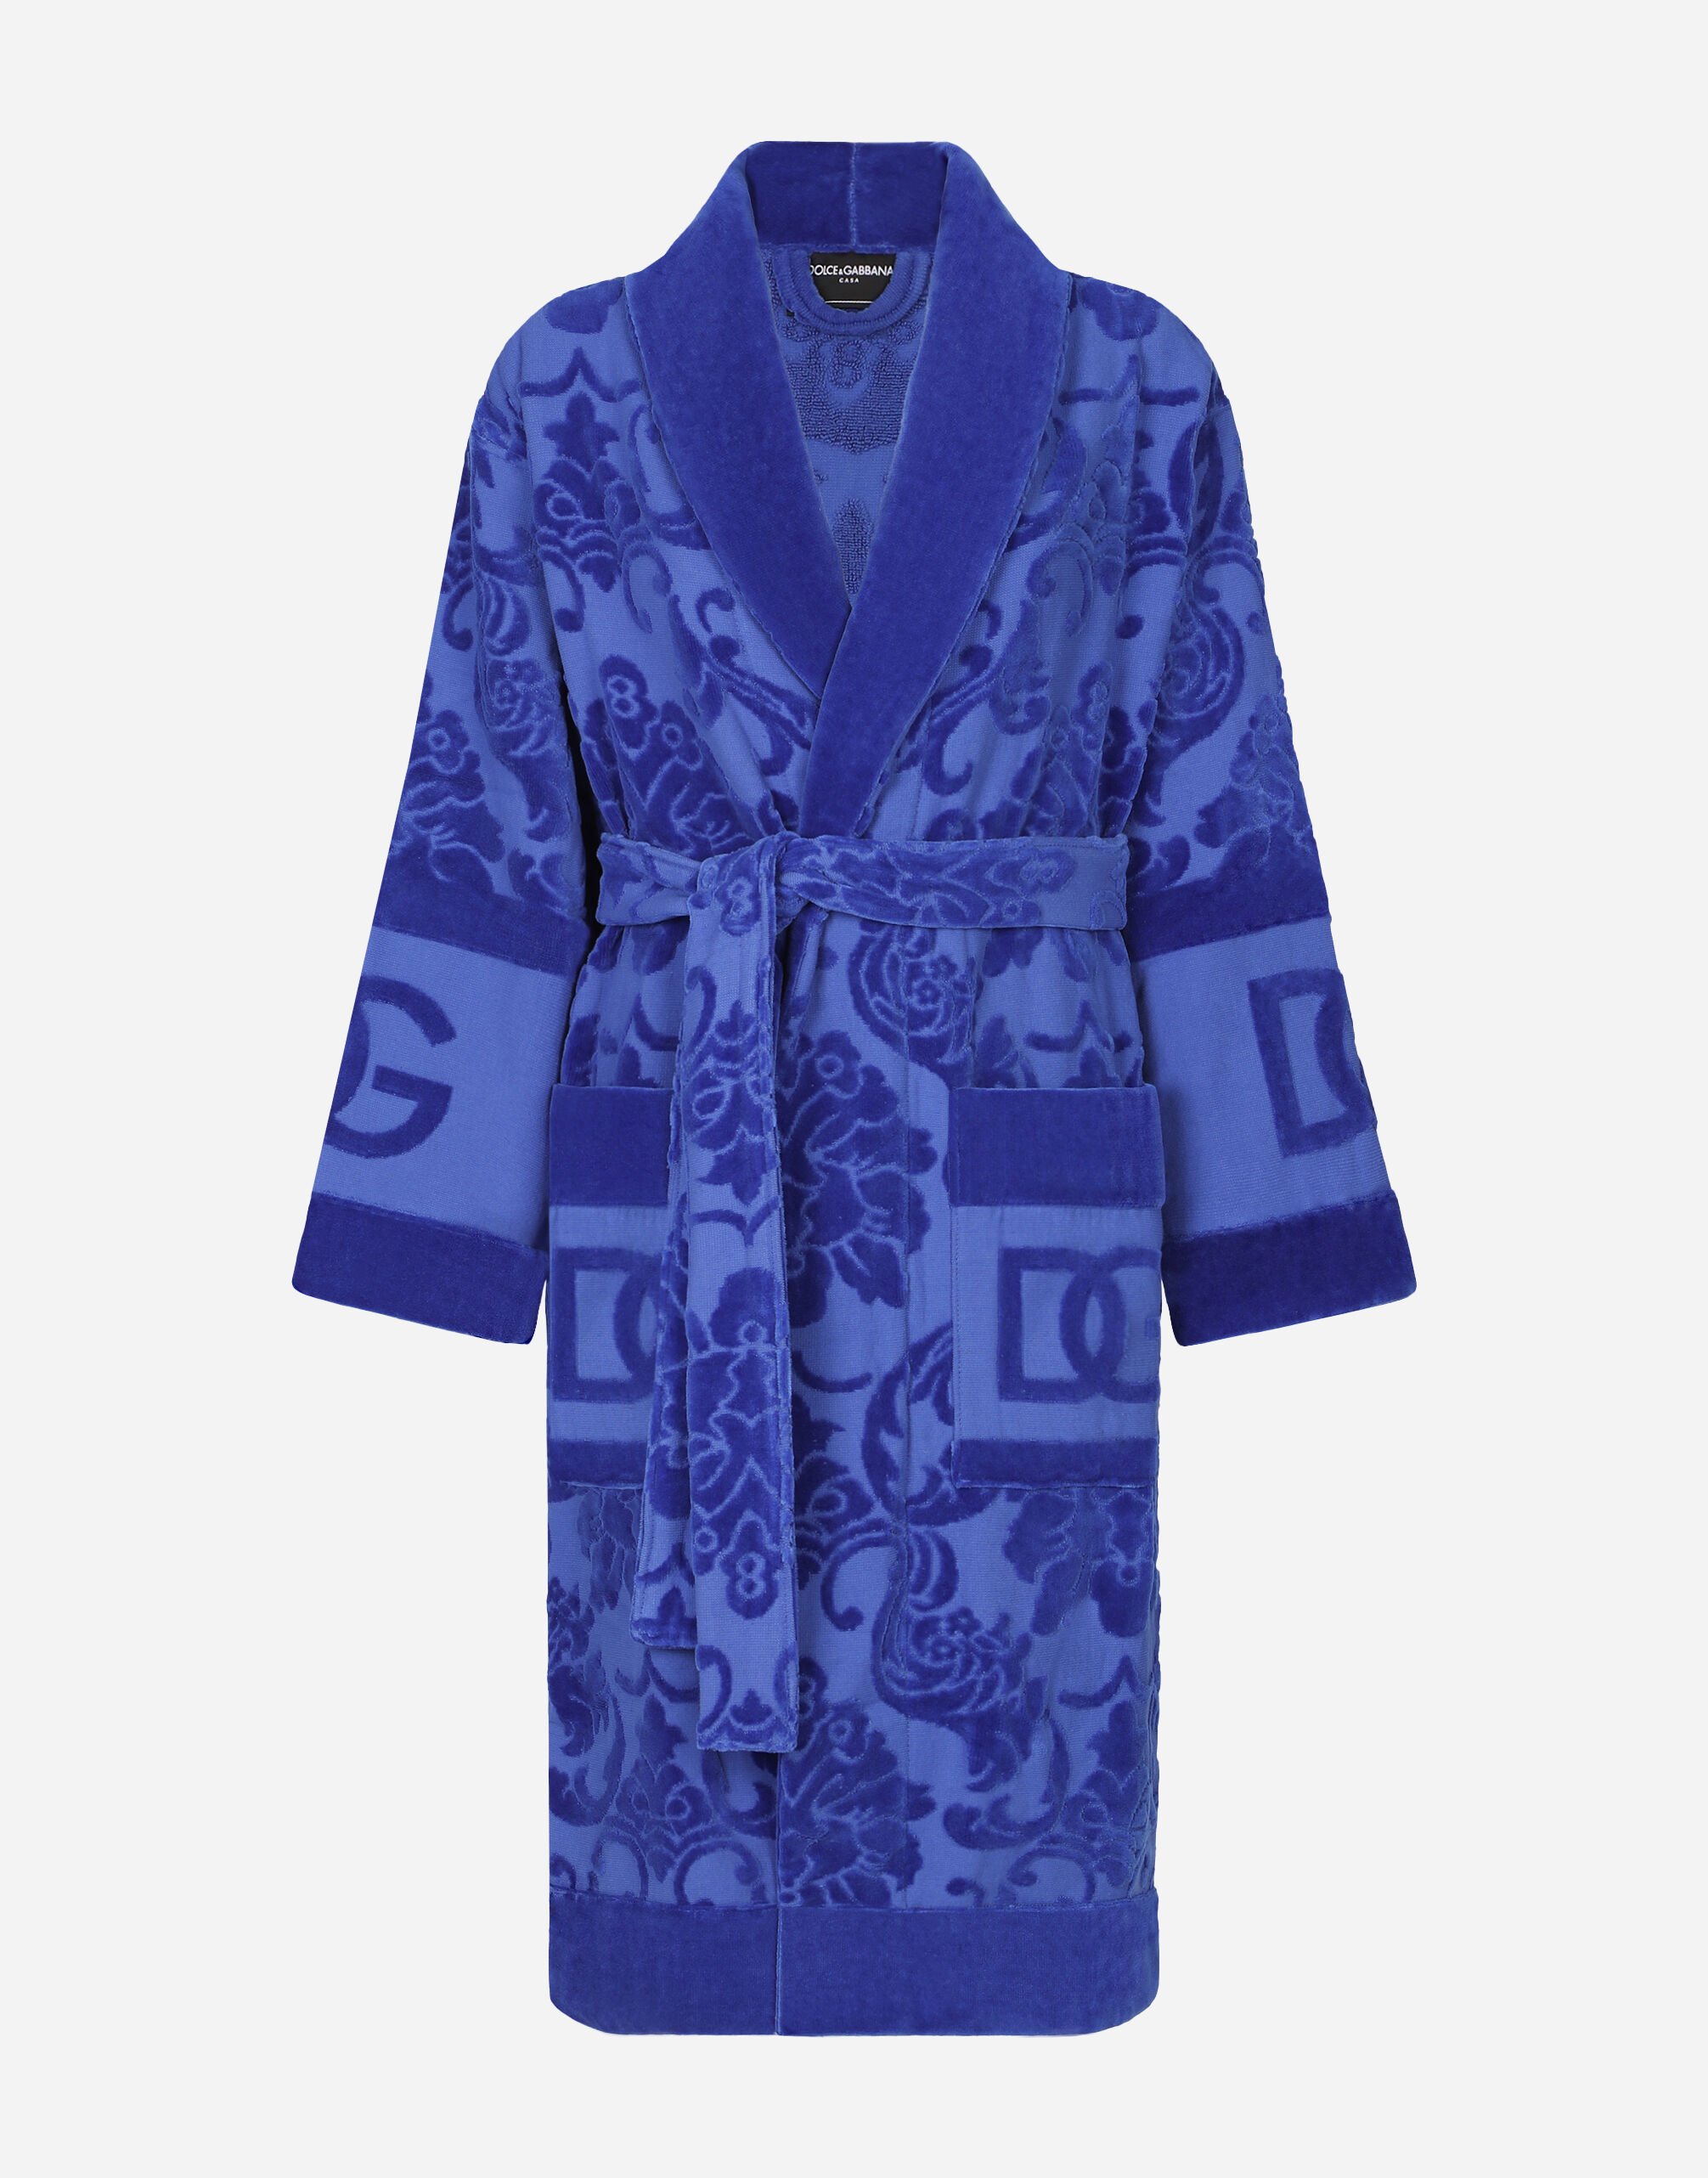 Dolce & Gabbana Bath Robe in Terry Cotton Jacquard Multicolor TCF014TCAGM